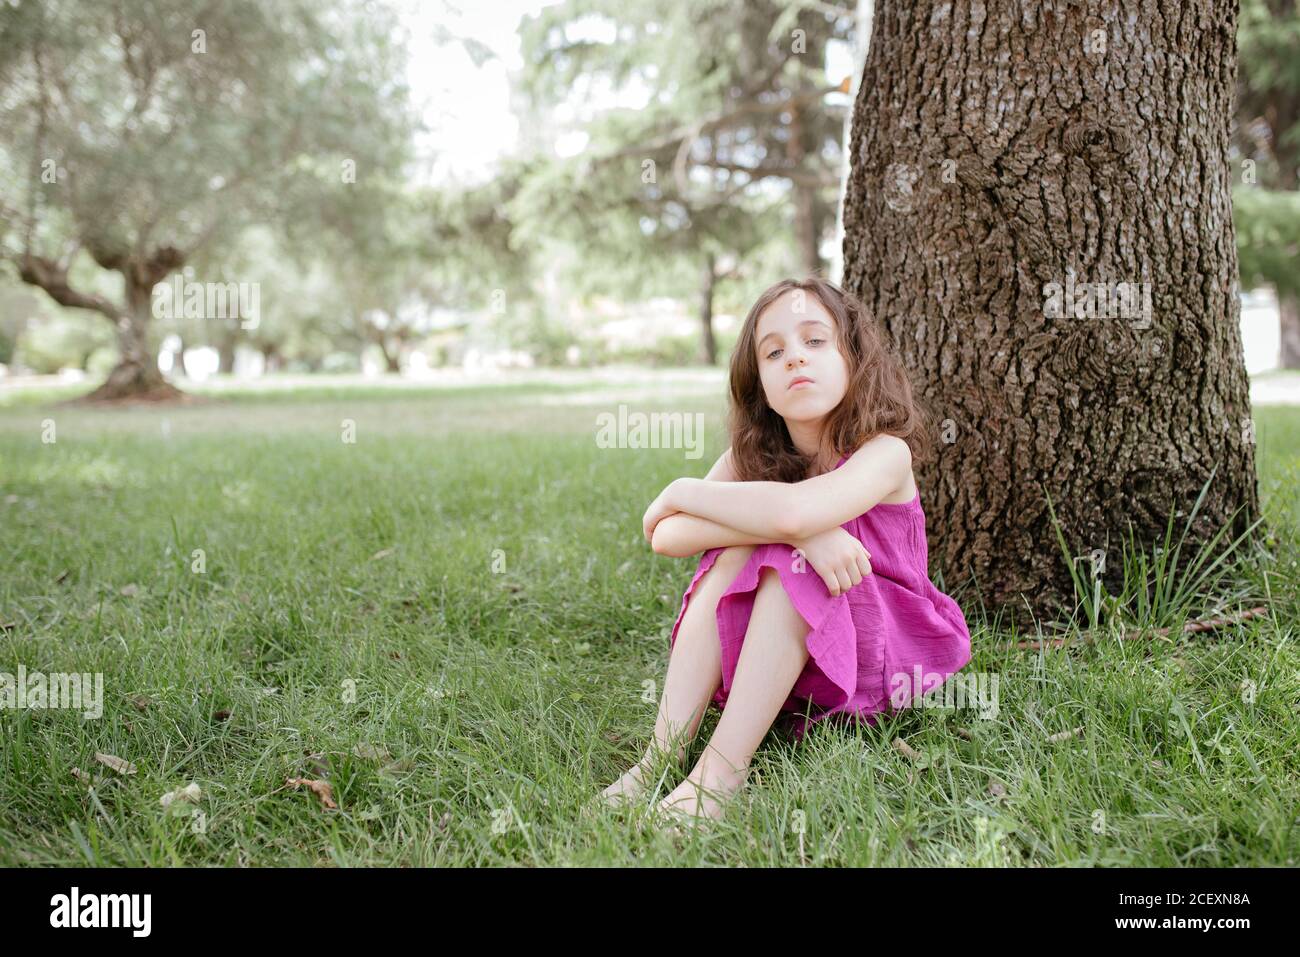 Ganzer Körper von ruhigen kleinen Mädchen in rosa Kleid sitzen Auf grünem Gras neben Baumstamm während der Ruhe im Park Im Sommer Tag Stockfoto